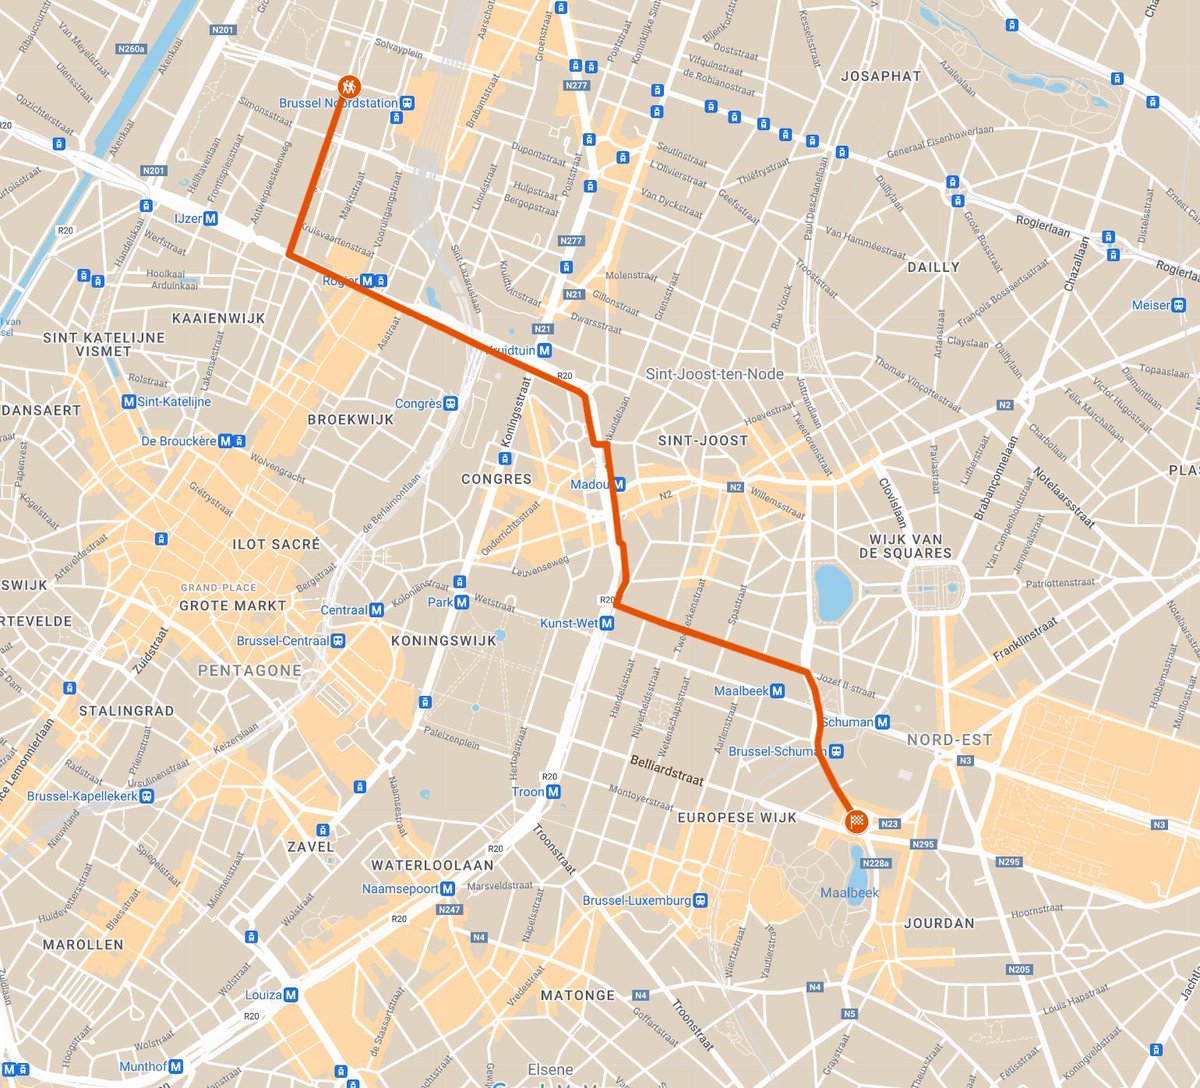 🪧 Vandaag (19 mei) van 13u tot 18u, trekt een betoging door #Brussel, tussen het Noordstation en het Jean Reyplein. ⚠️ Verkeershinder wordt verwacht op de Kleine Ring (R20) en in de Europese wijk.